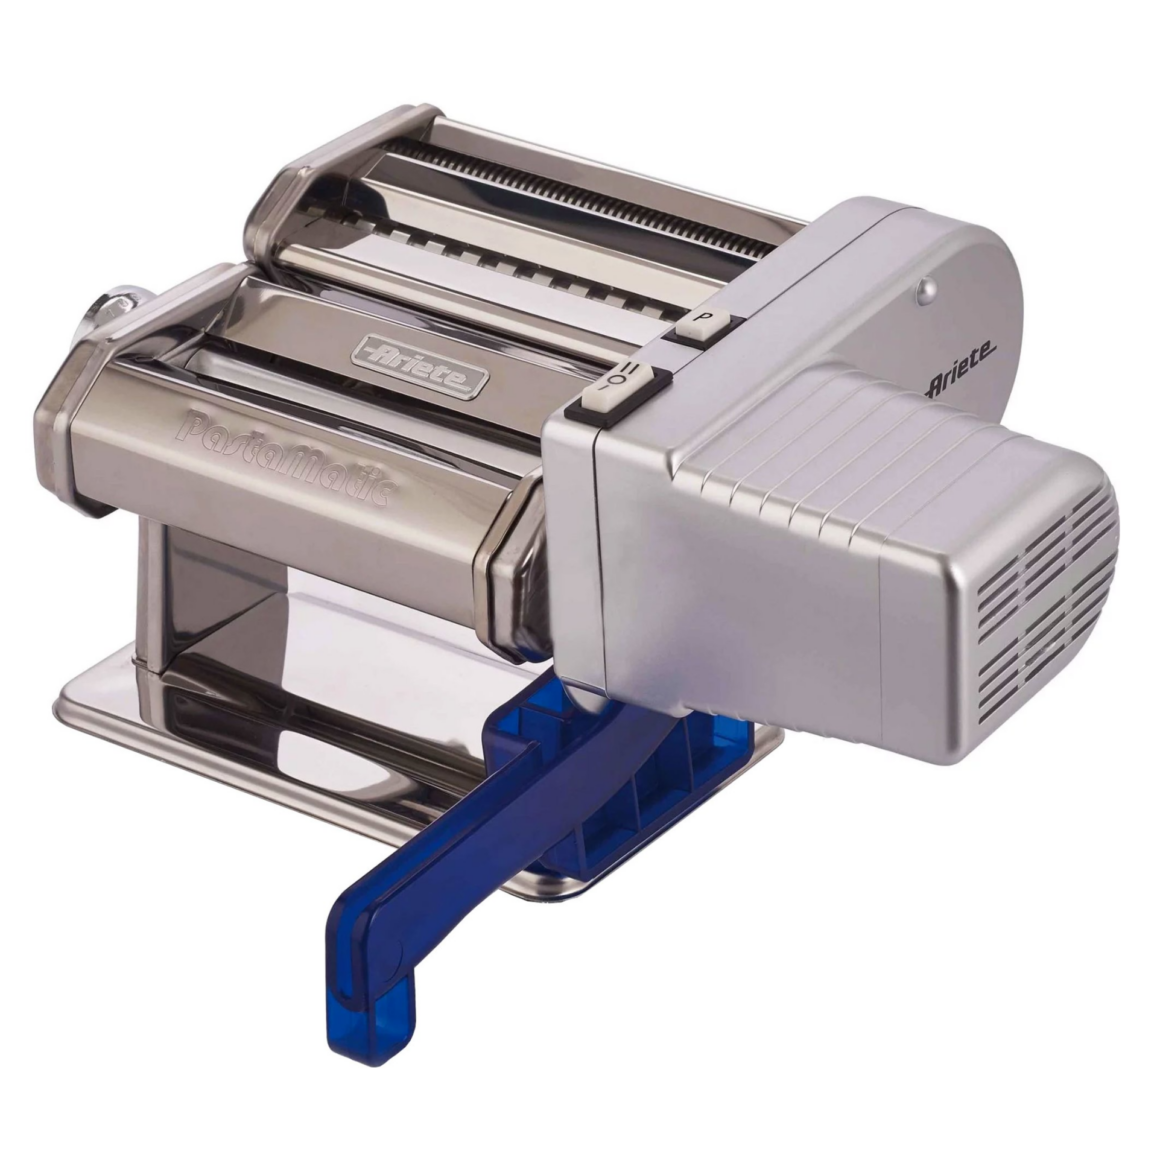 Ariete Paster Maker - Elektrisk pastamaskine med 10 niveauer